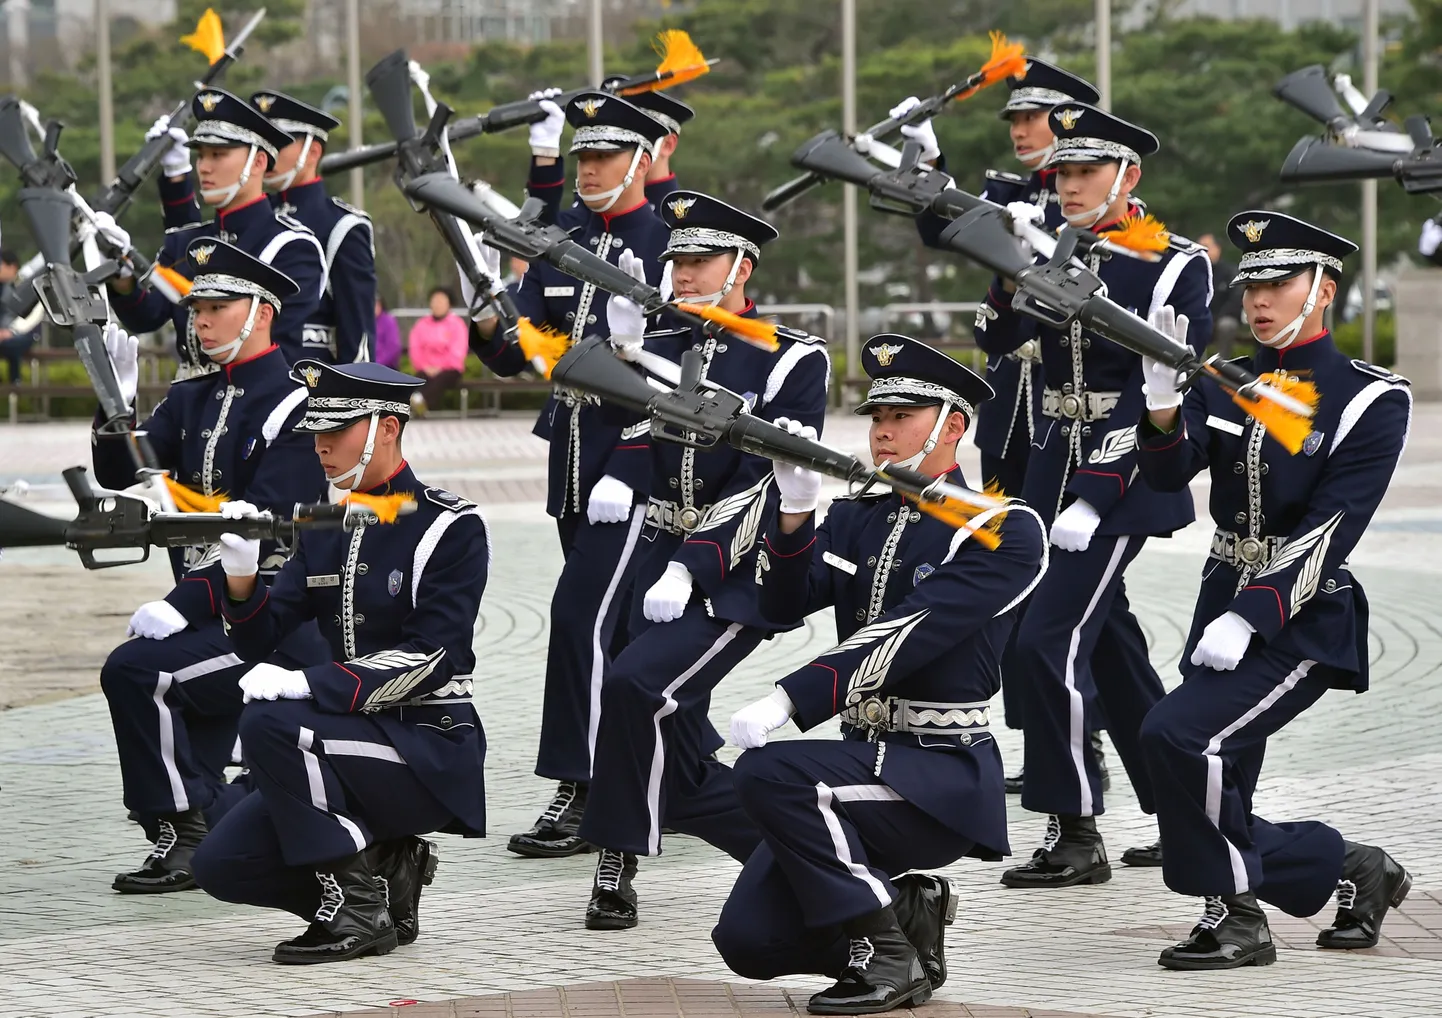 Lõuna-Korea sõjaväe auvahtkond esinemas.